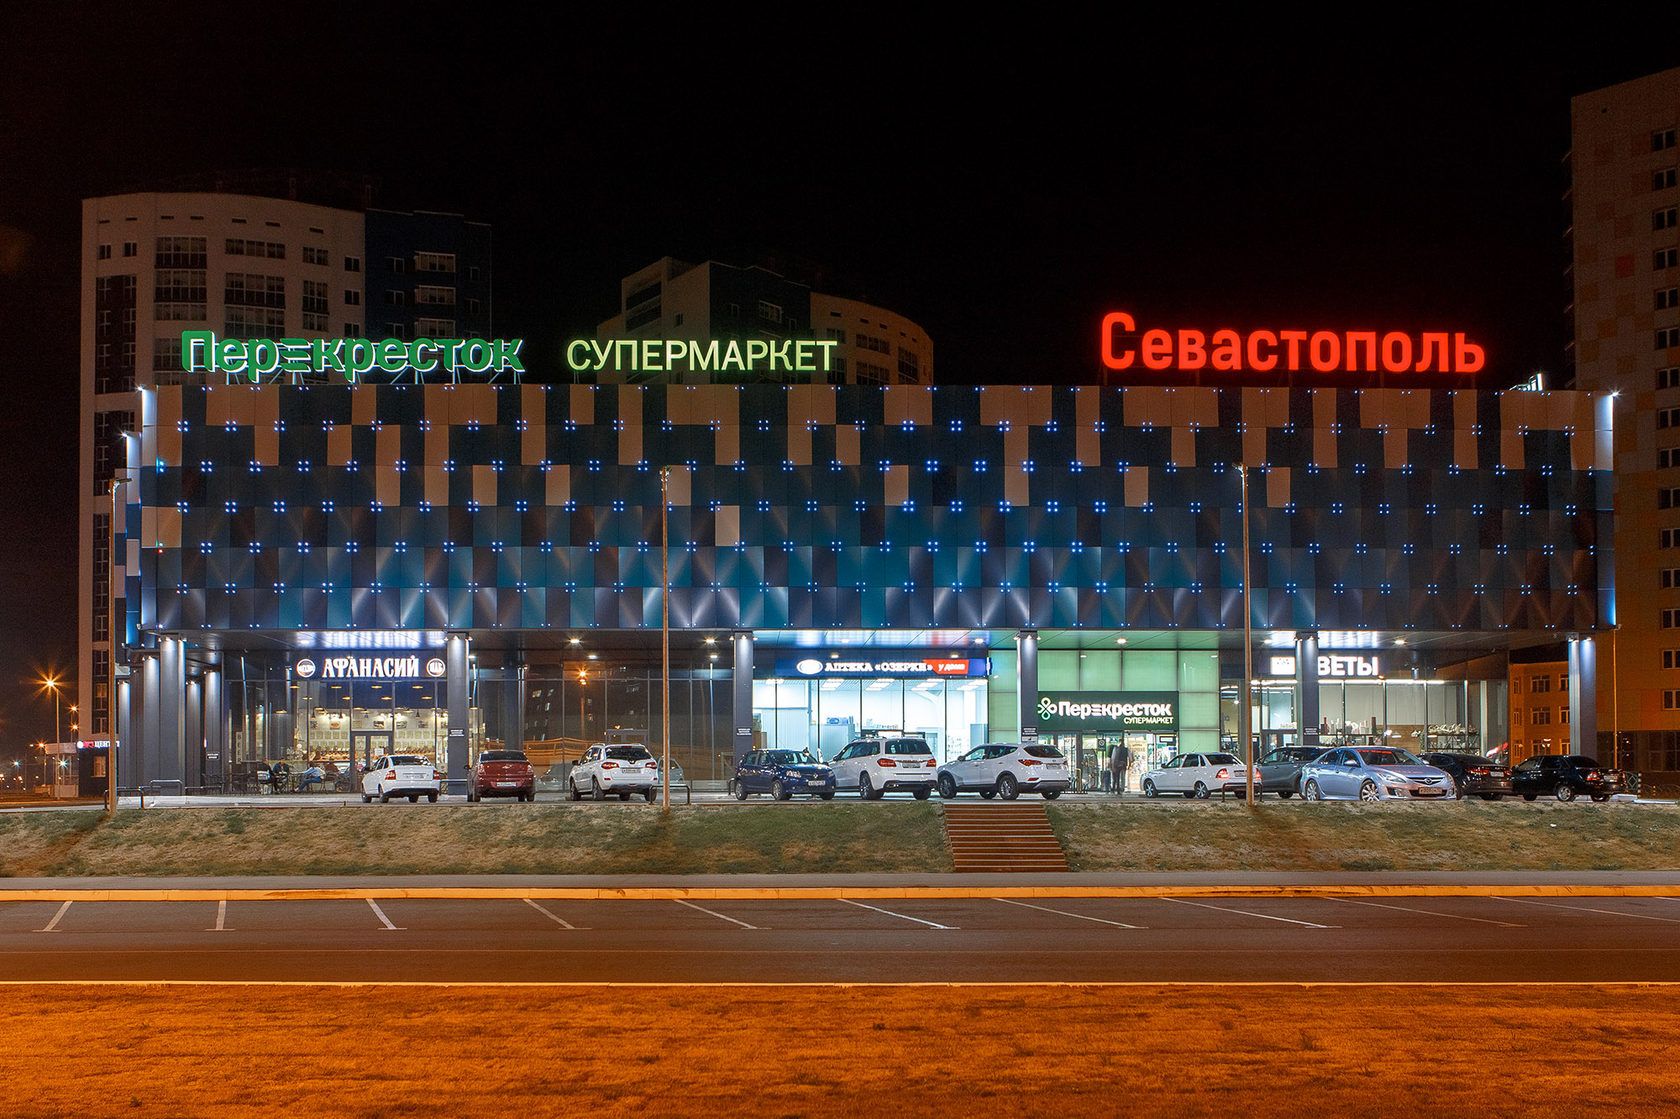 «Севастополь» - освещение торгового центра